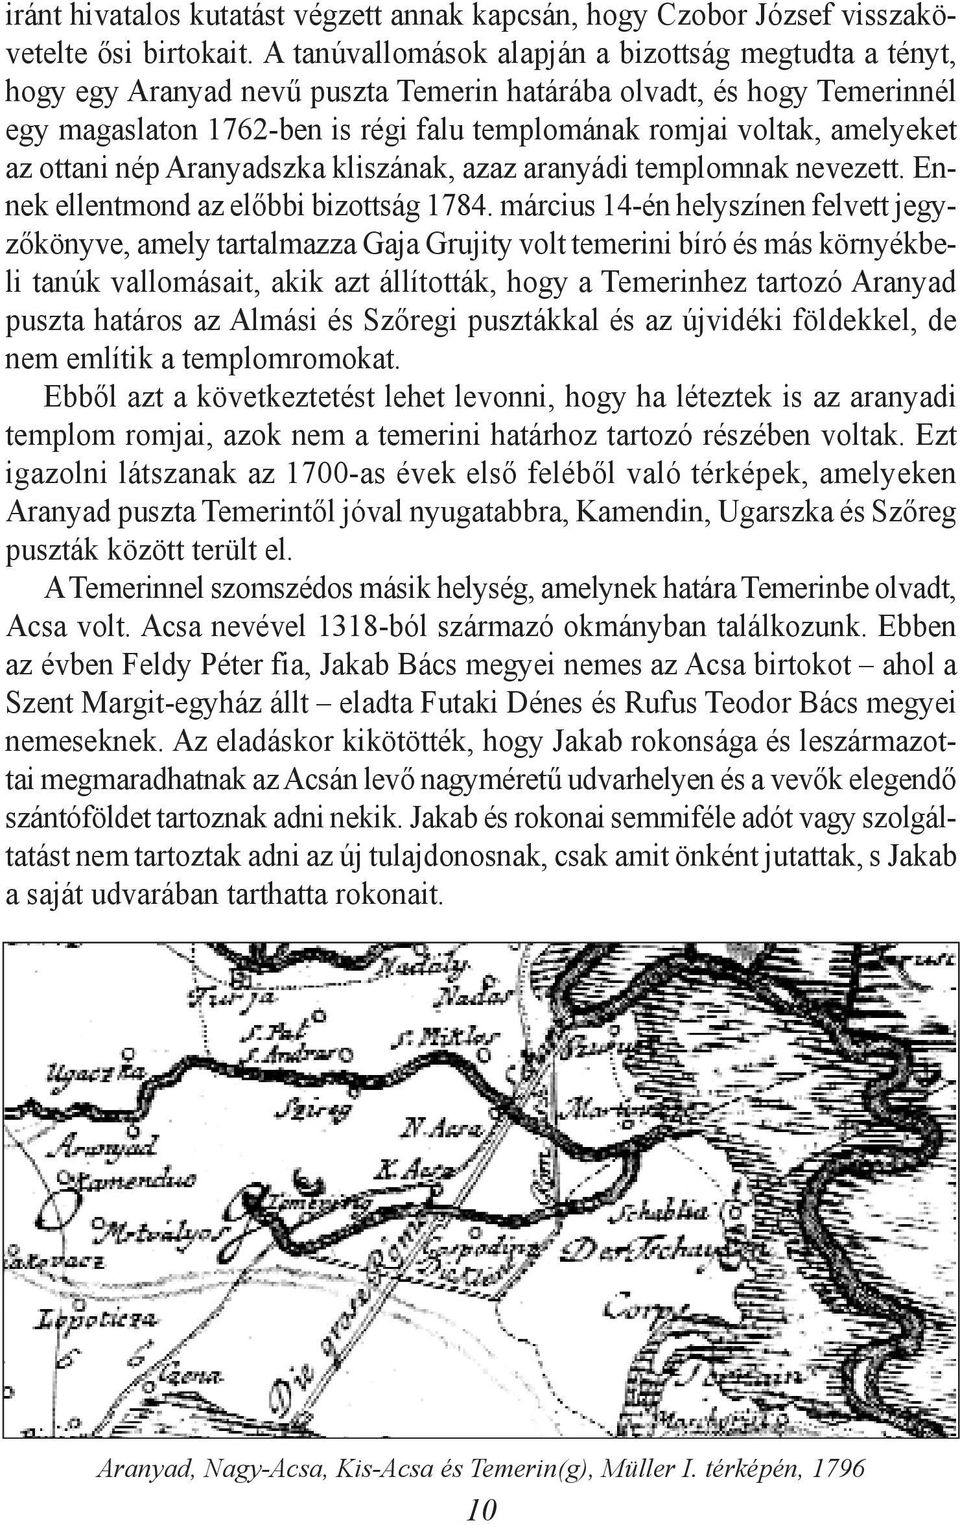 amelyeket az ottani nép Aranyadszka kliszának, azaz aranyádi templomnak nevezett. Ennek ellentmond az elõbbi bizottság 1784.